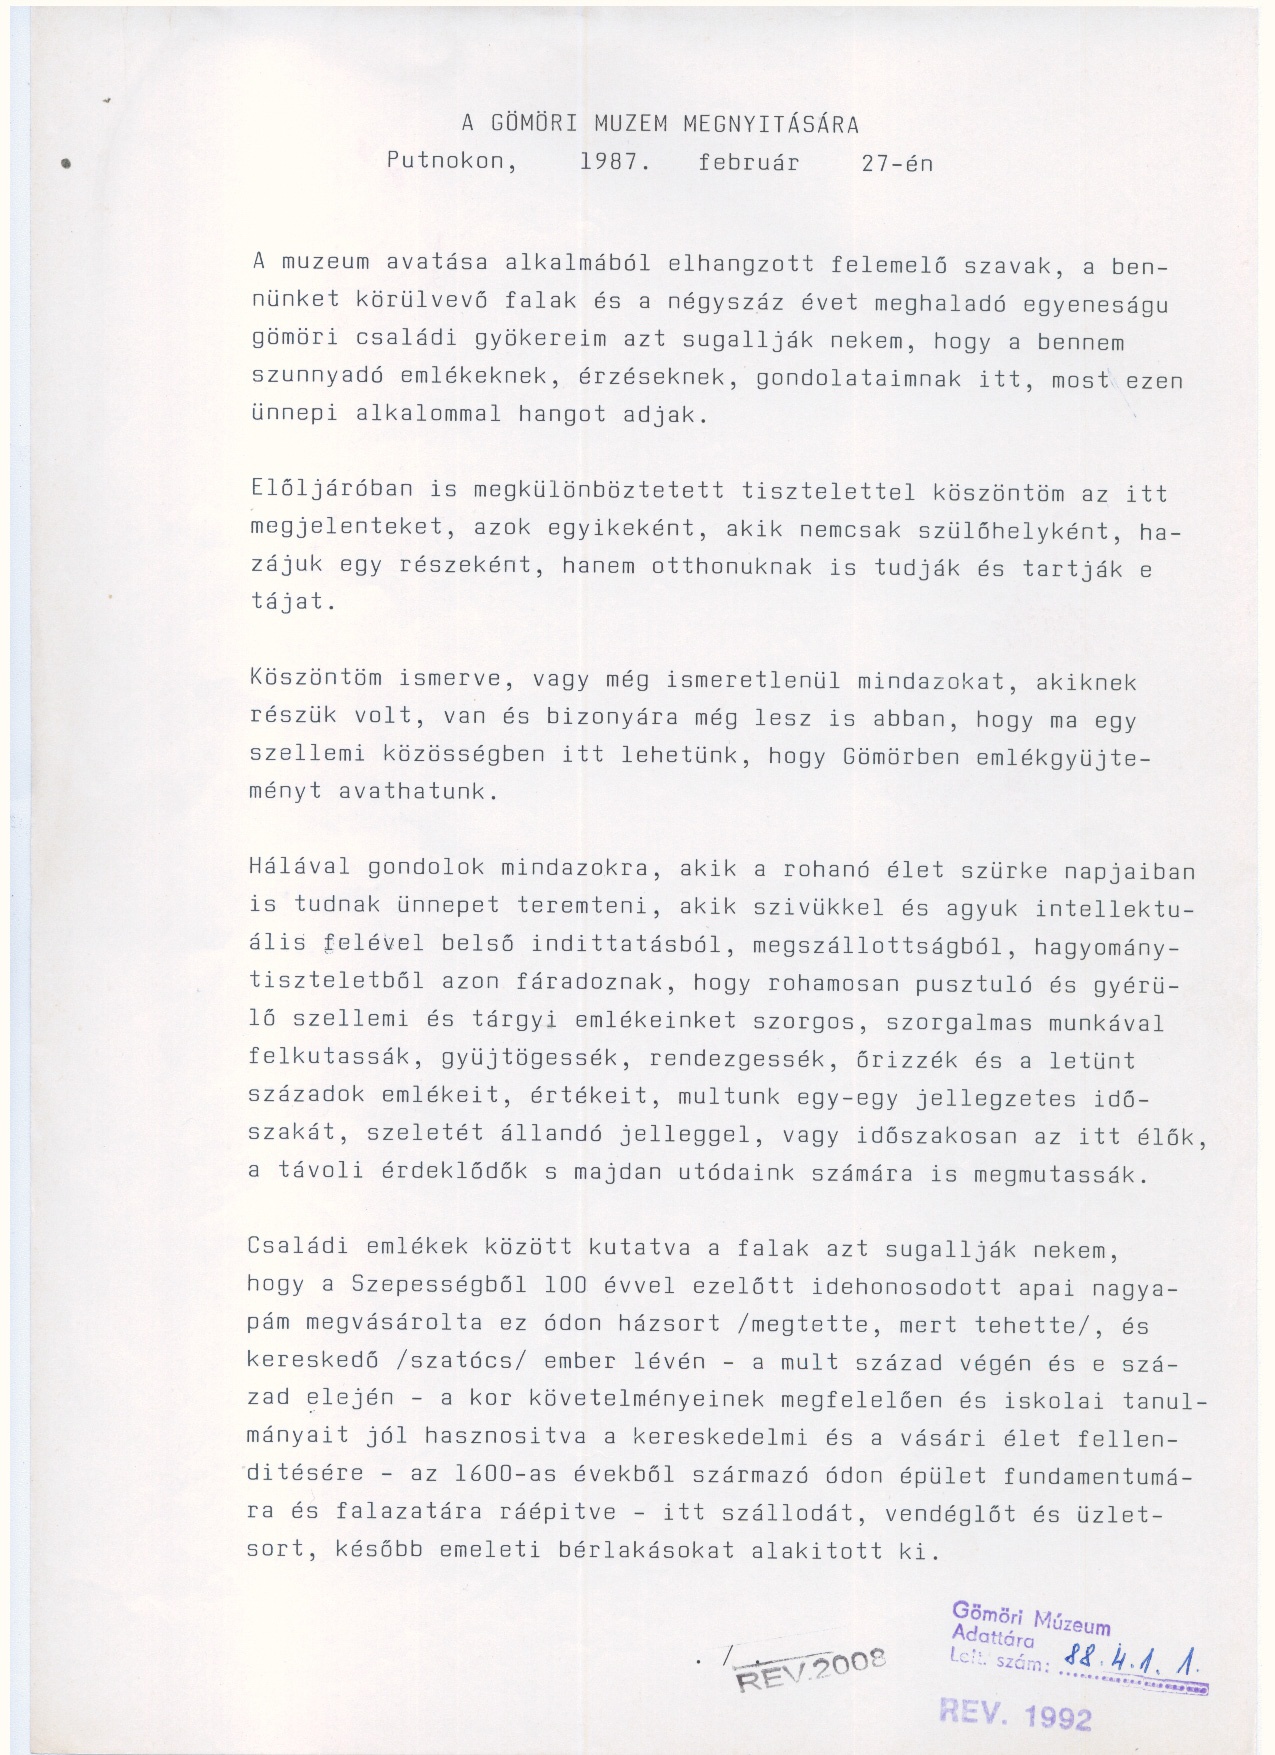 Kézirat    1987. (Gömöri Múzeum, Putnok CC BY-NC-SA)